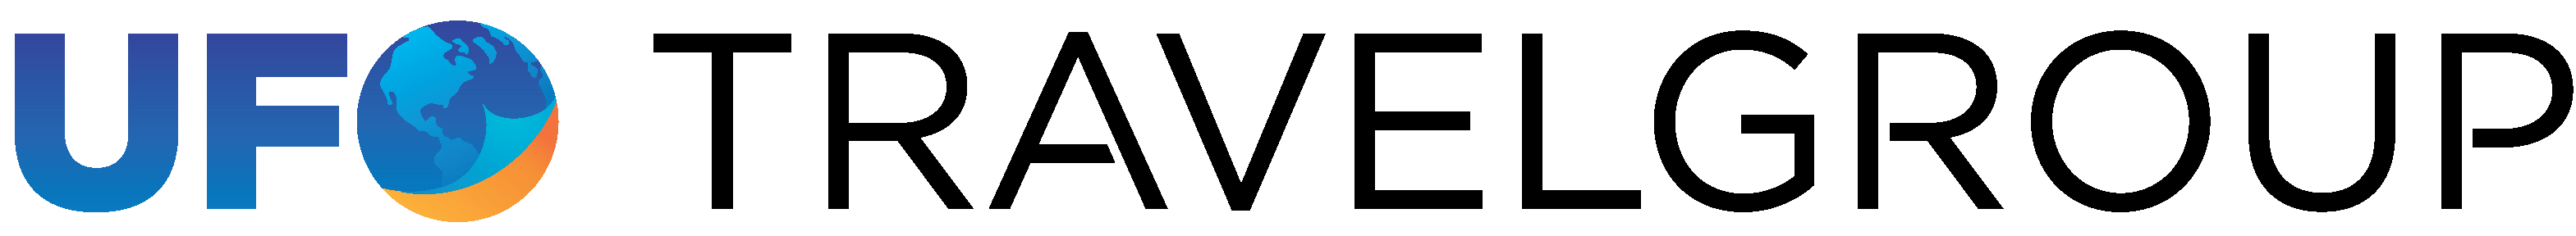 ifo travel groupe logo